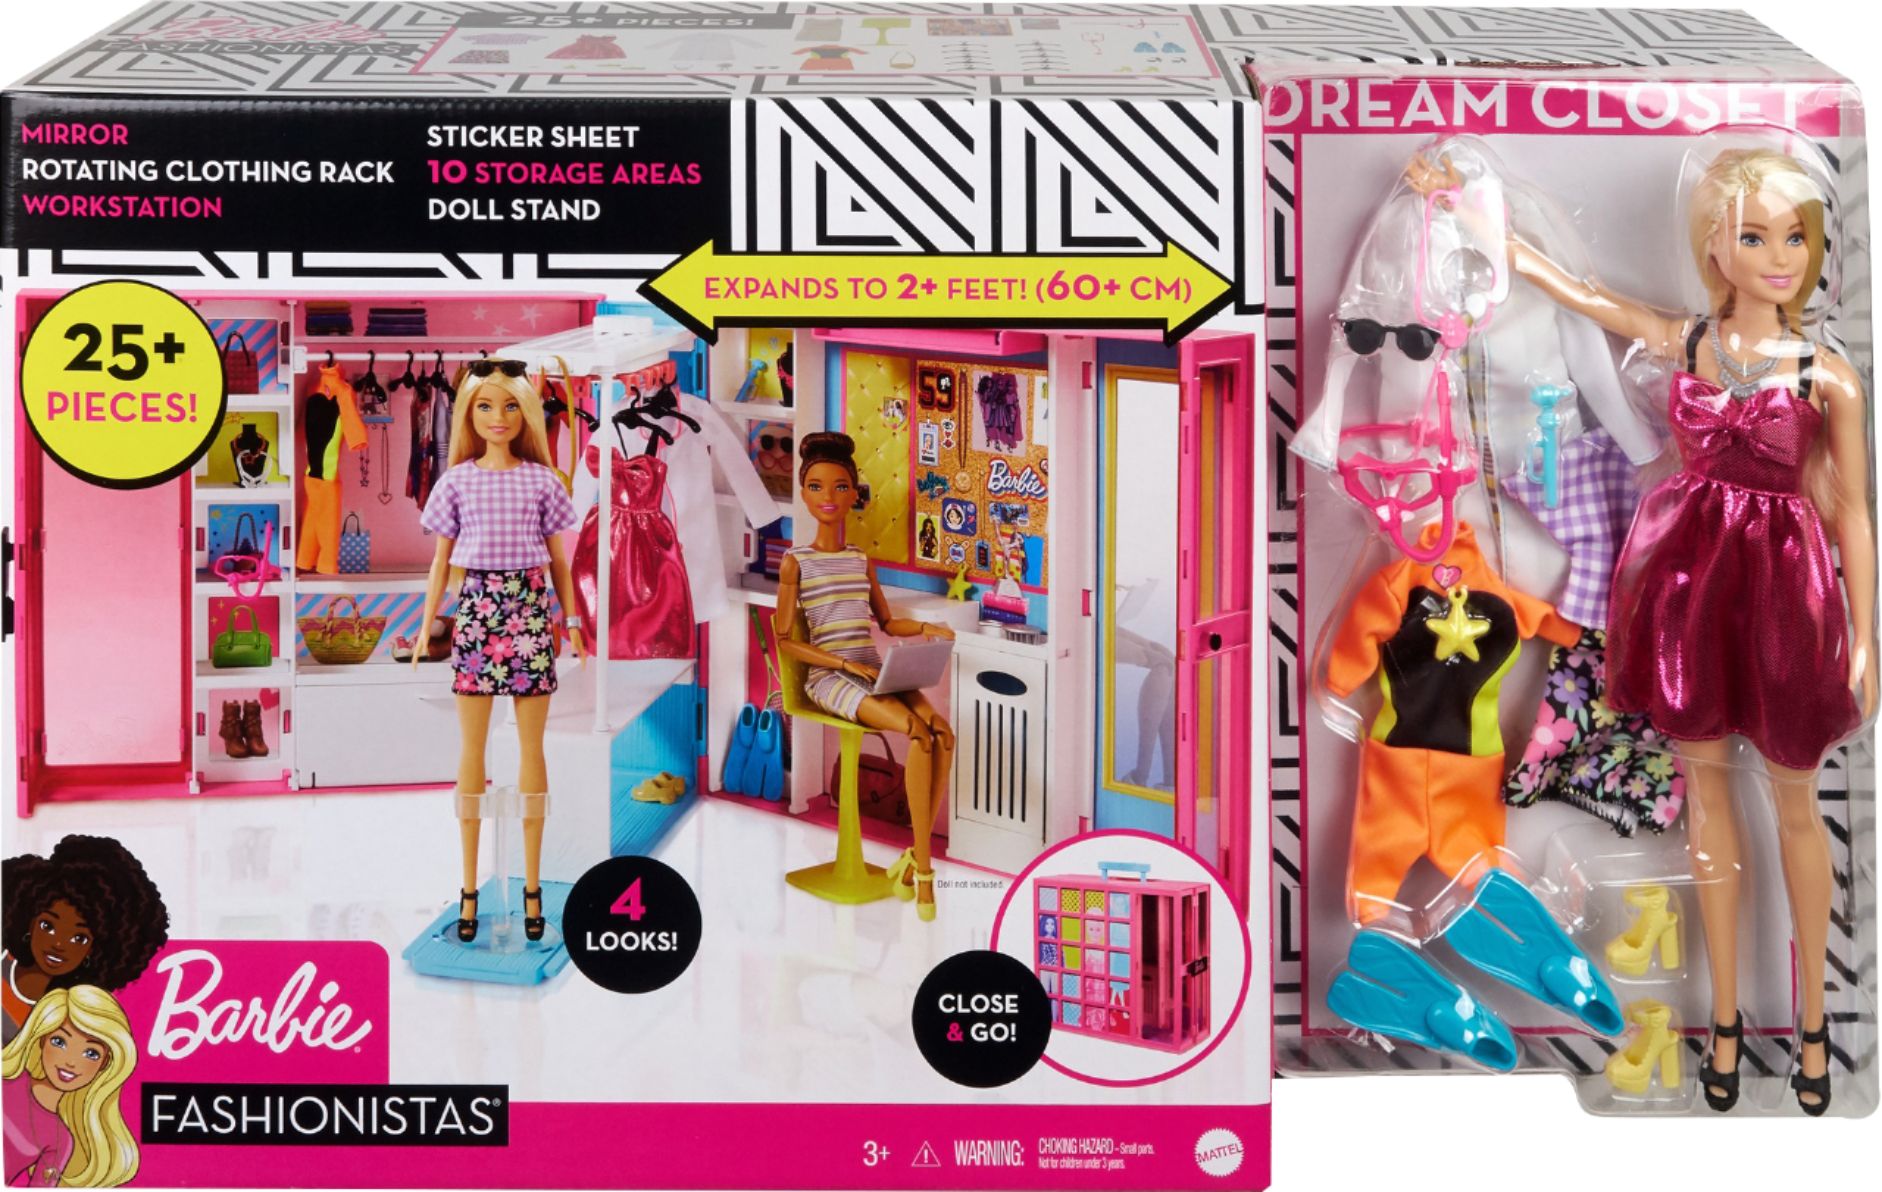 forfølgelse Uredelighed kaskade Barbie Dream Closet GBK10 - Best Buy